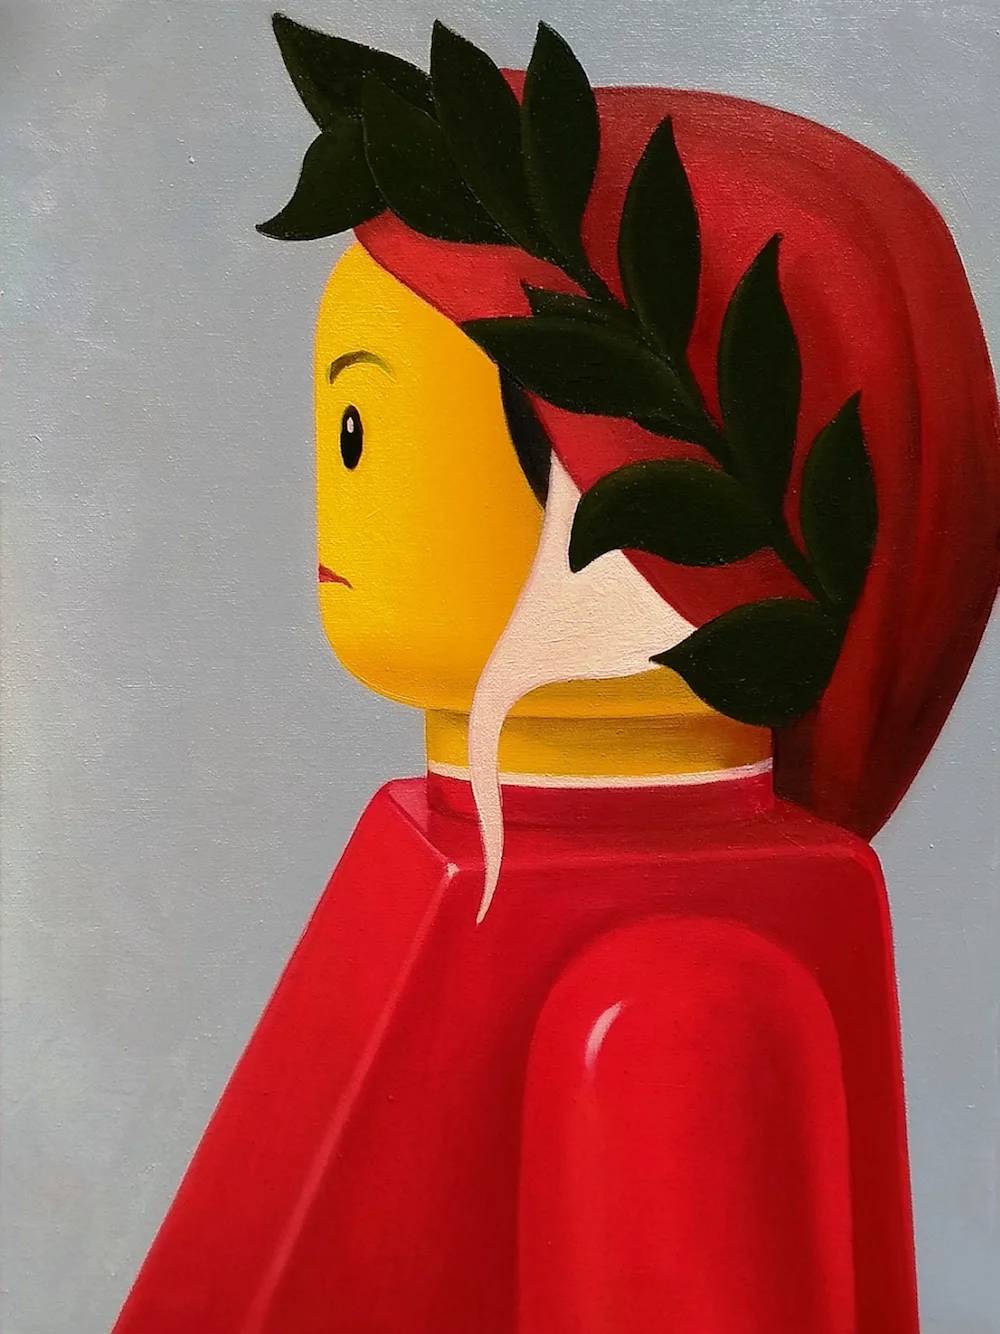 Cuadros famosos recreados con personajes de LEGO